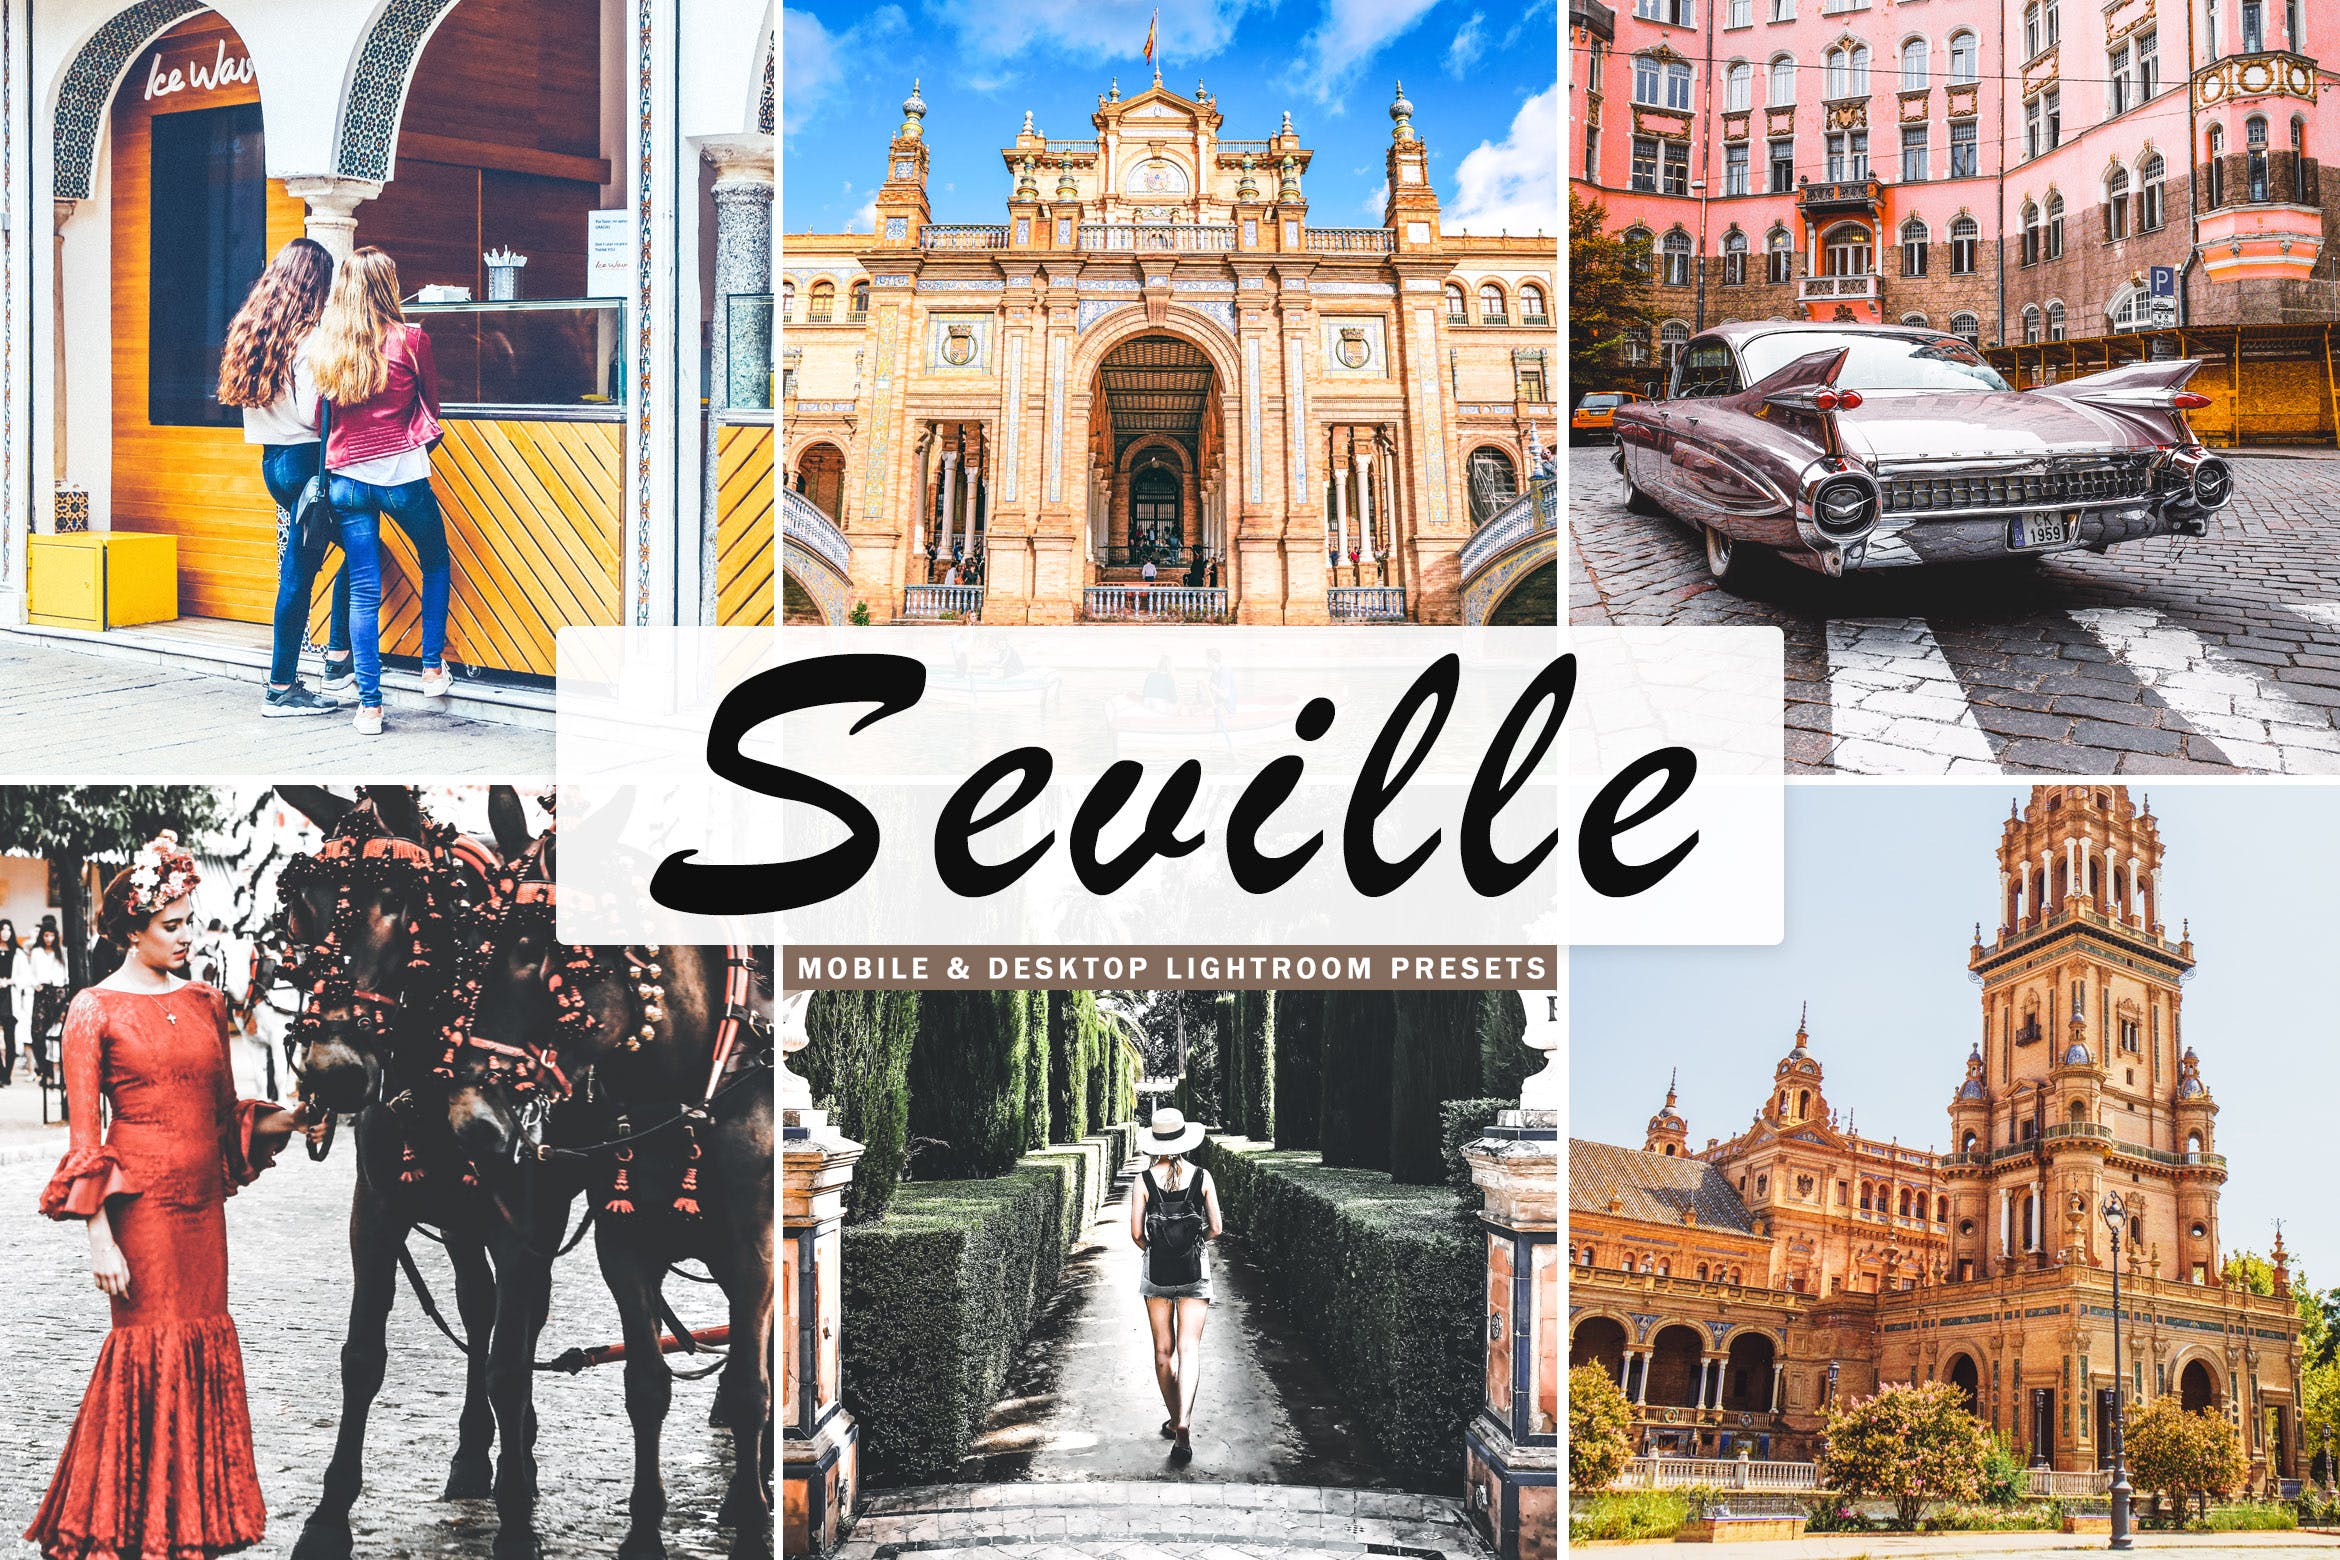 塞维利亚旅行摄影后期加工非凡图库精选LR预设 Seville Mobile & Desktop Lightroom Presets插图